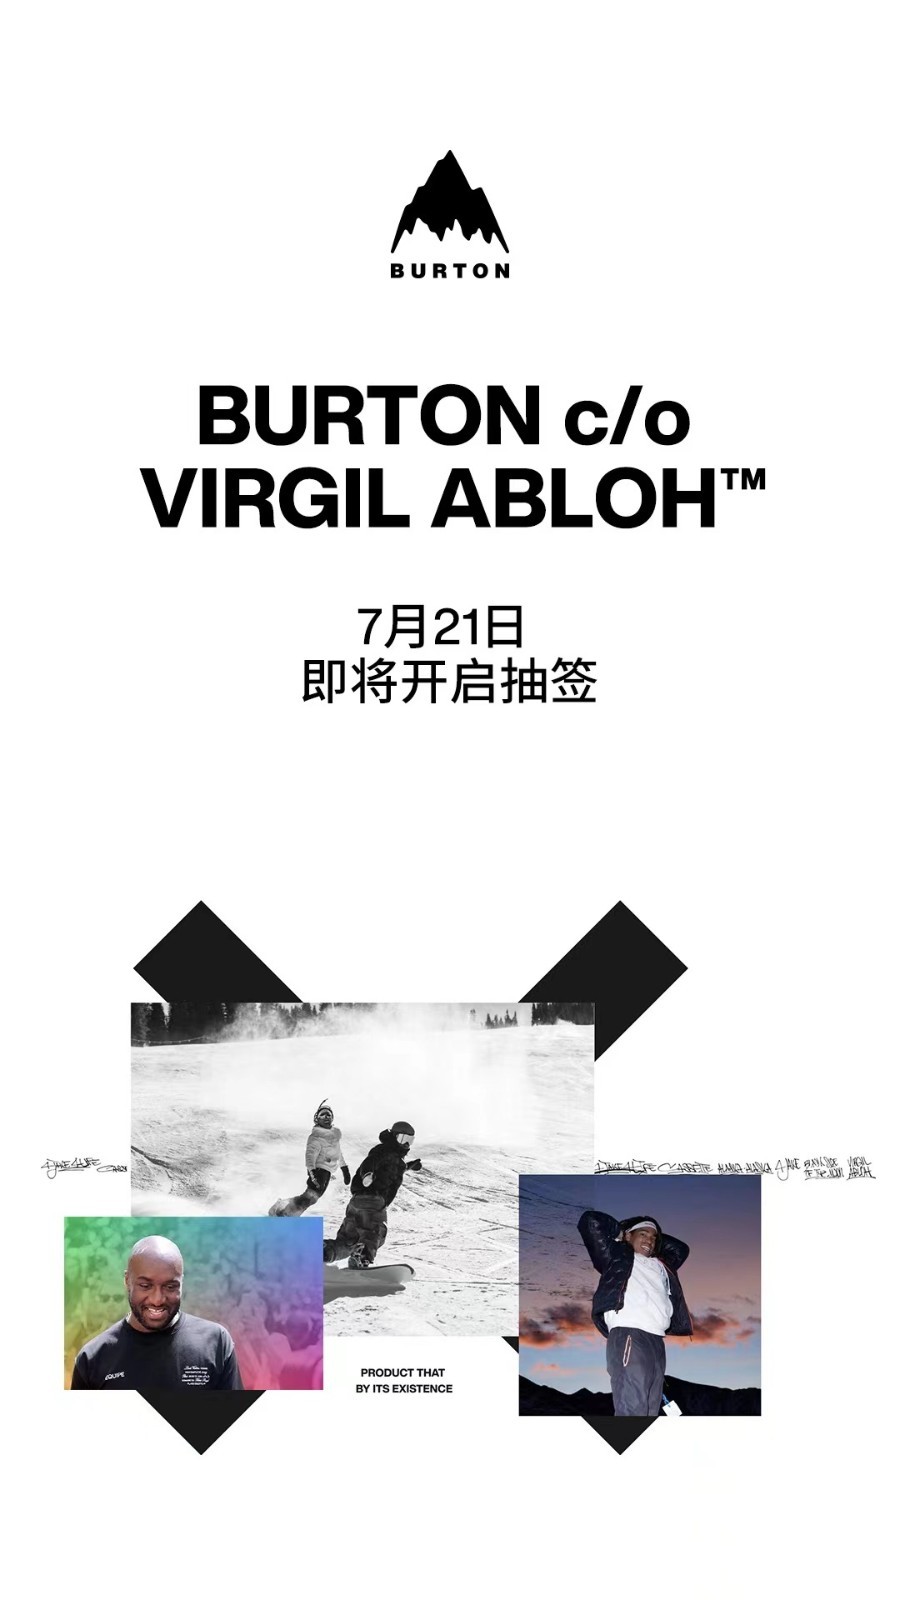 全新 BURTON c/o Virgil Abloh™ 系列发布 BURTON 与 Virgil Abloh 的单板联名系列开启抽签